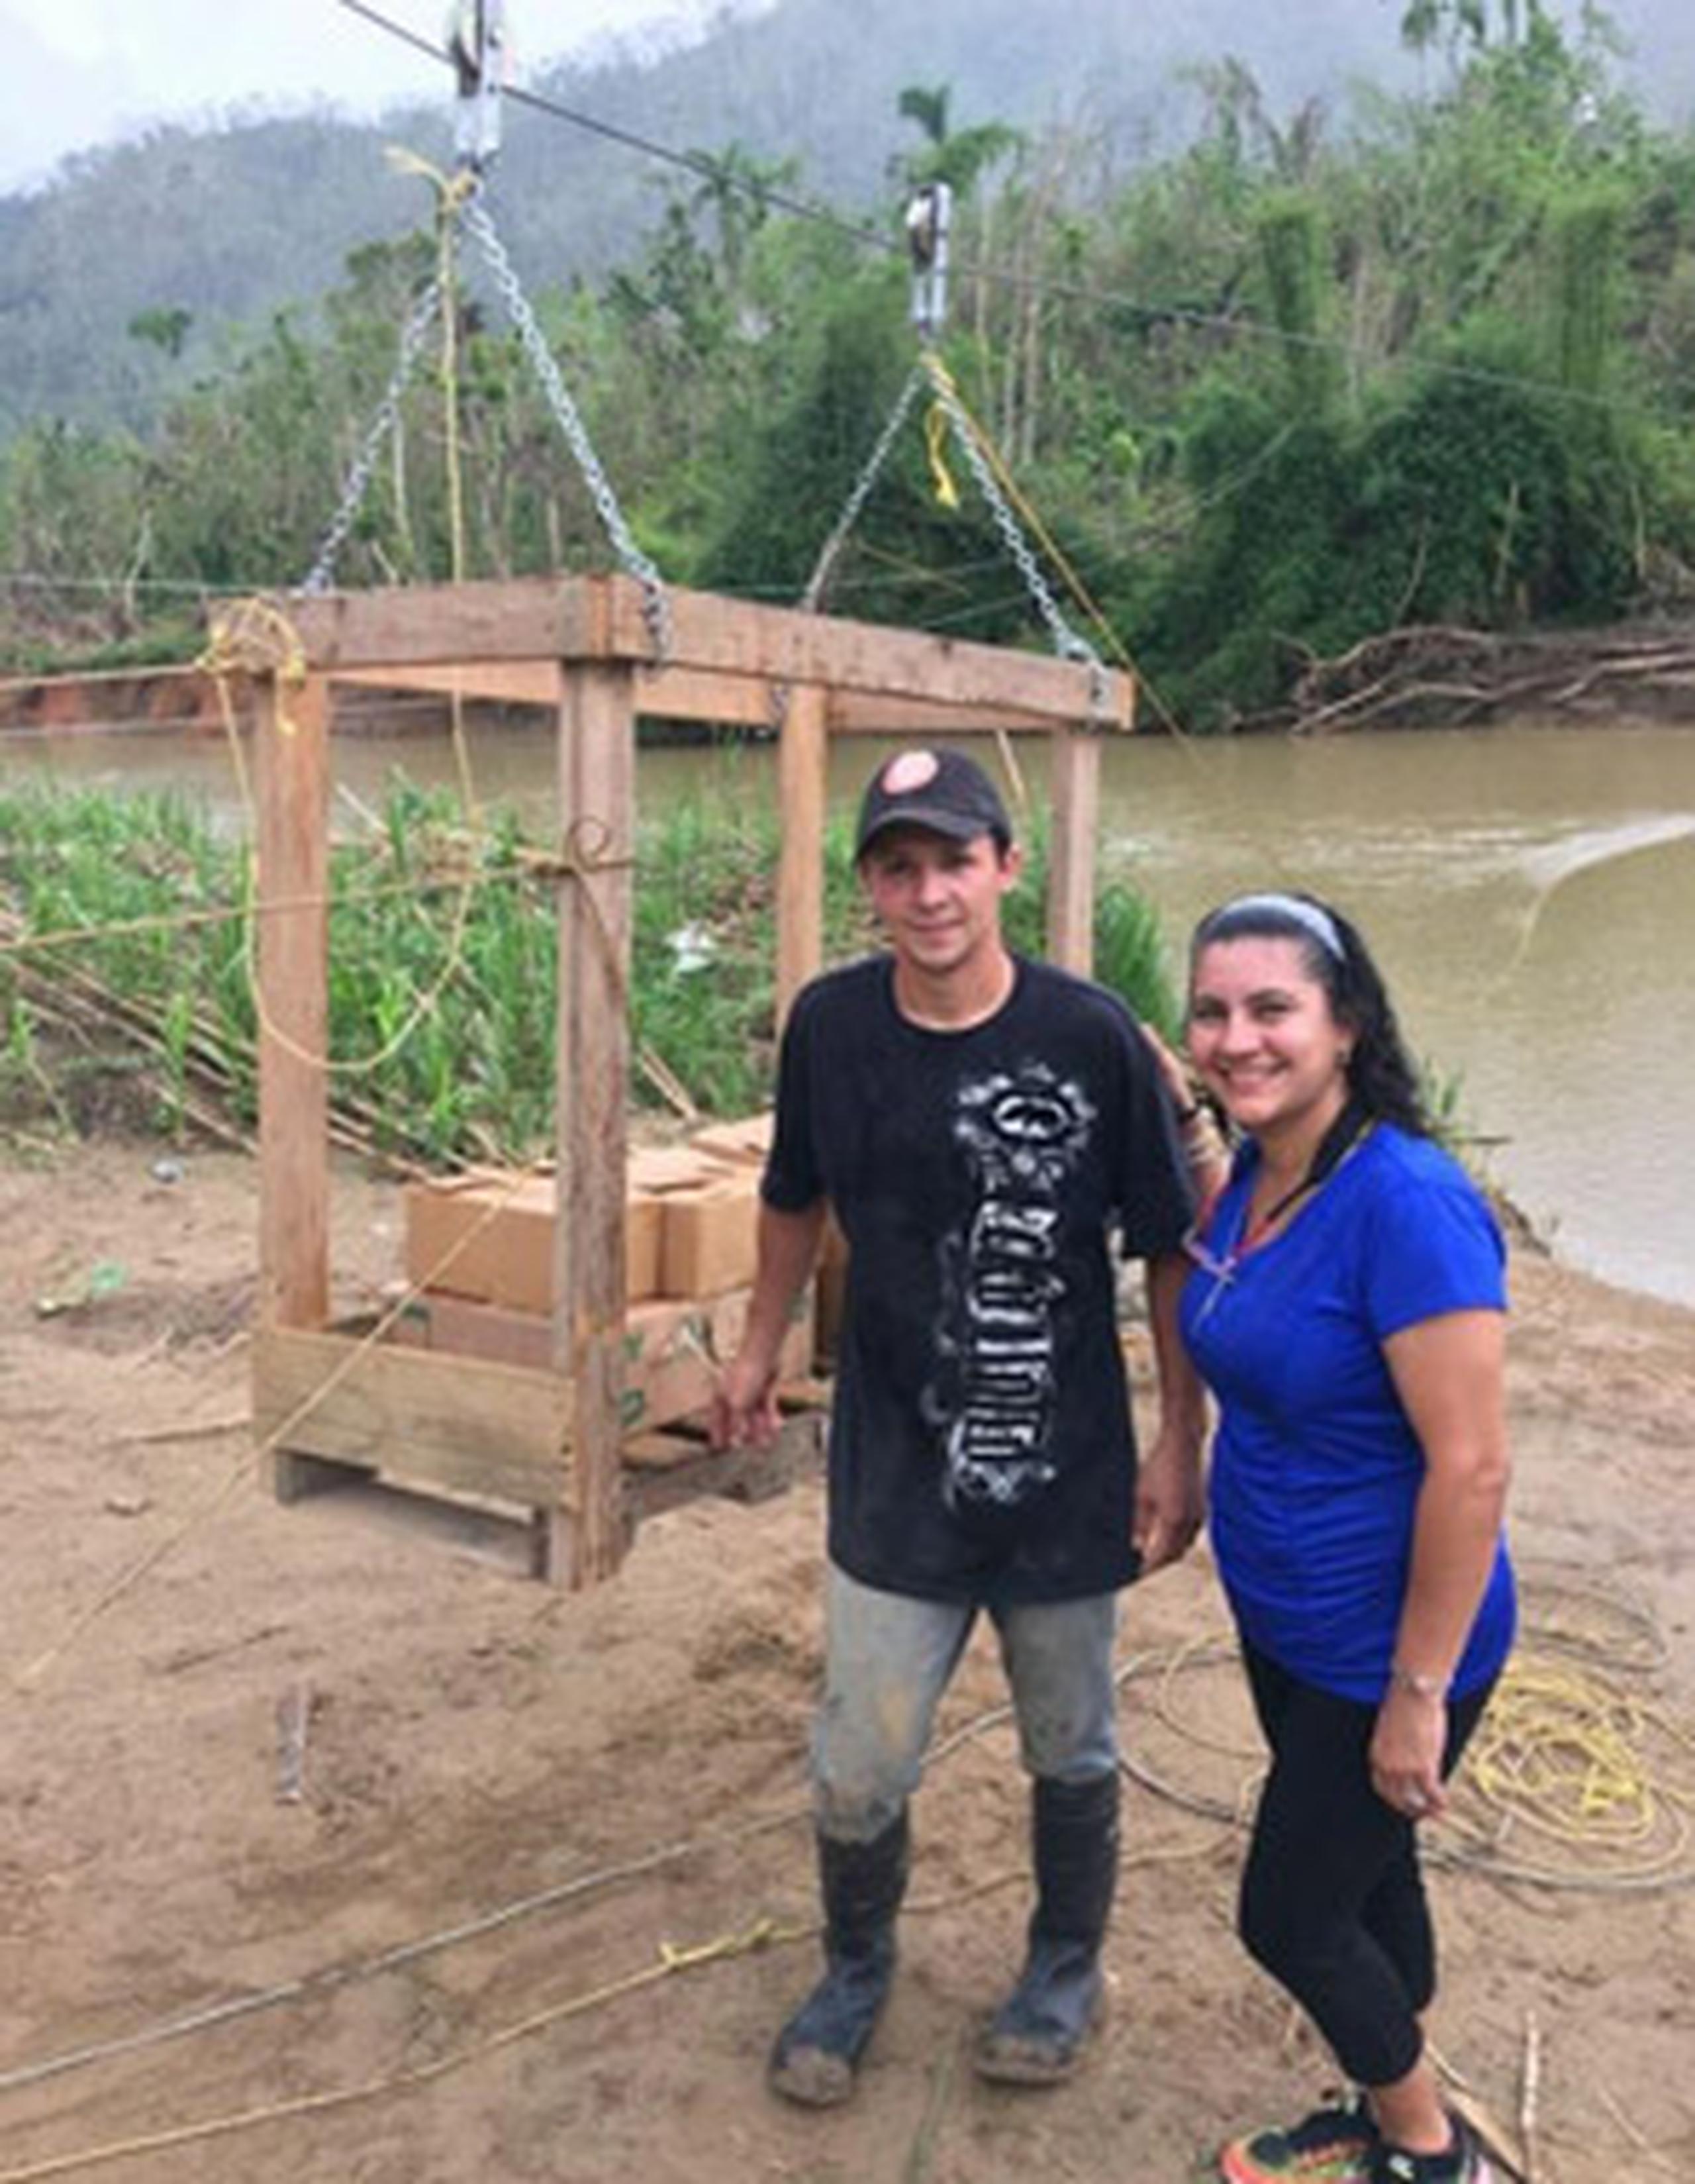 La canasta de madera fue construida por Iván y su familia. Dentro de ella cruzan un río y llevan los víveres necesarios para sobrevivir ante la emergencia tras el paso del huracán María. (Captura Facebook)